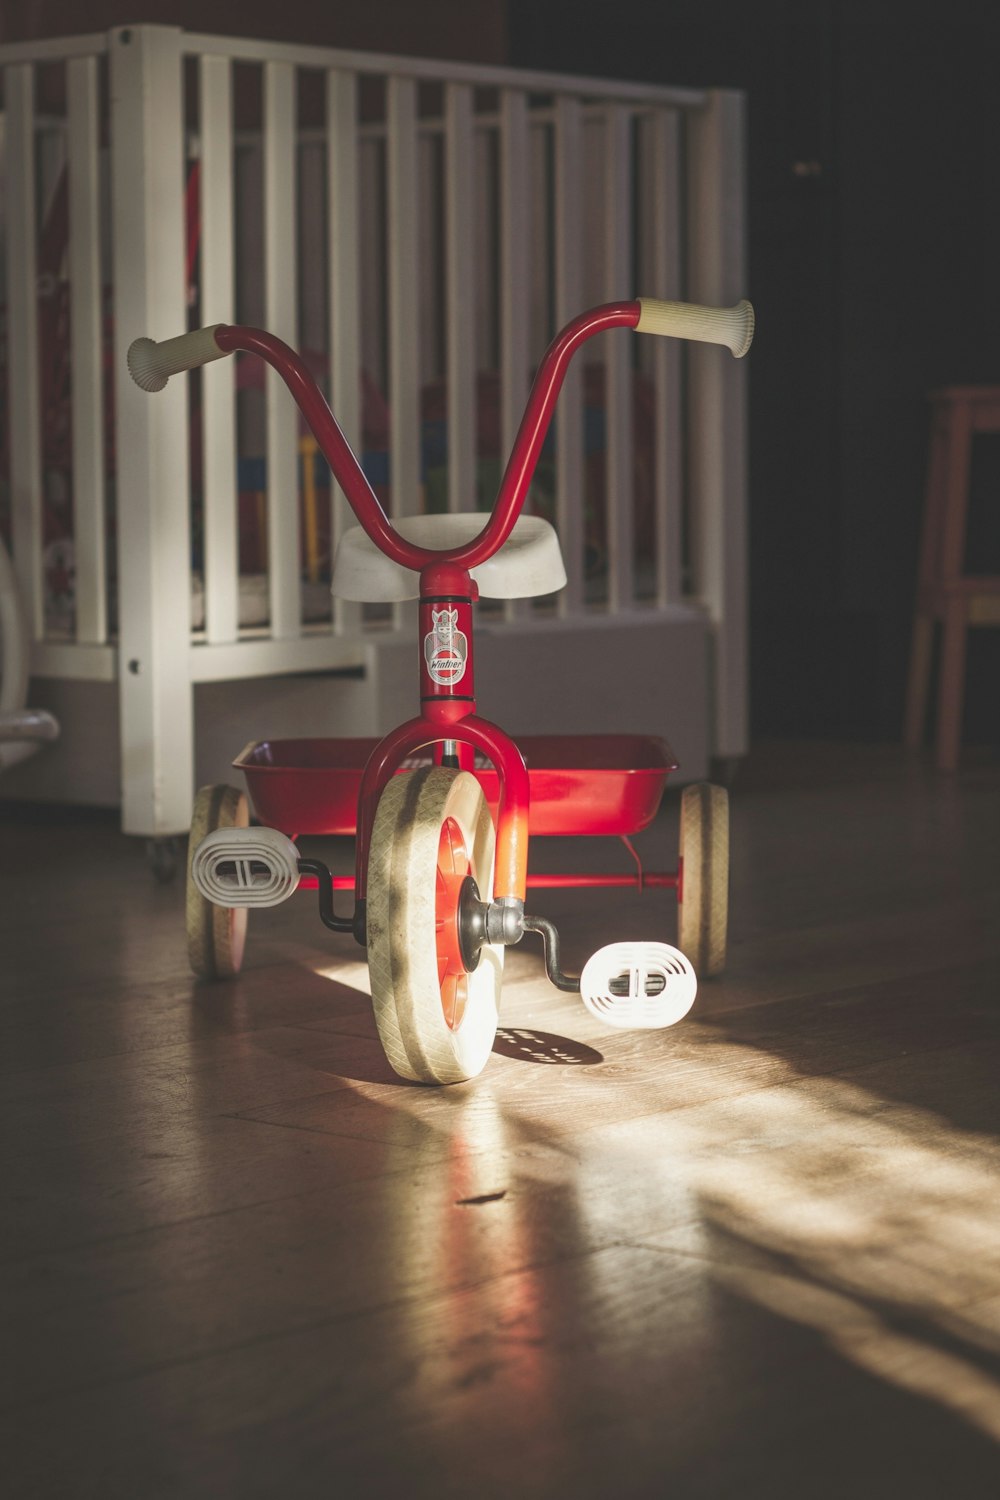 fotografia de foco seletivo do triciclo vermelho e branco da criança ao lado do berço branco